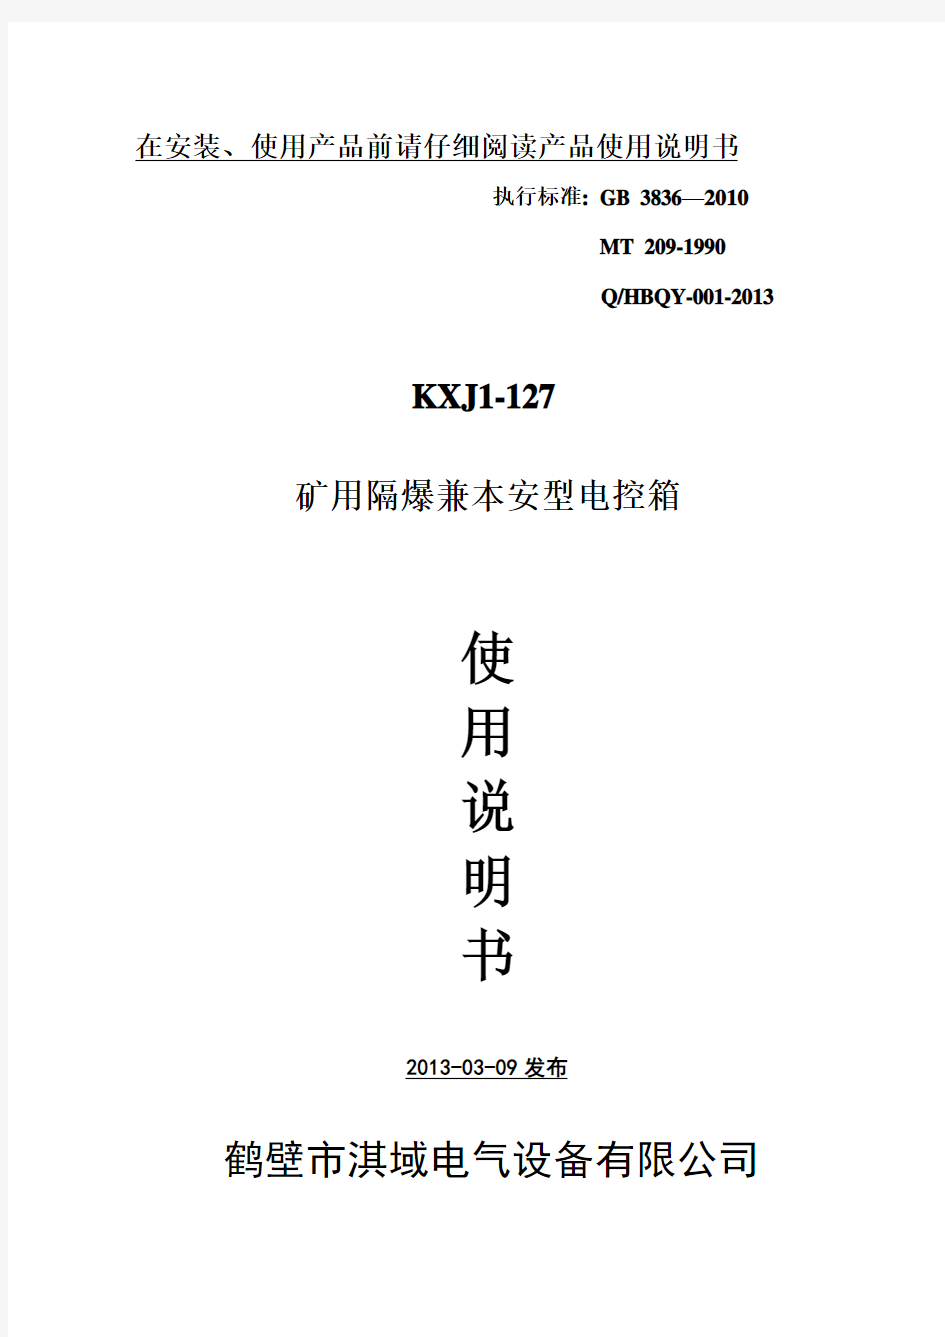 KXJ1-127矿用隔爆兼本安型控制箱使用说明书